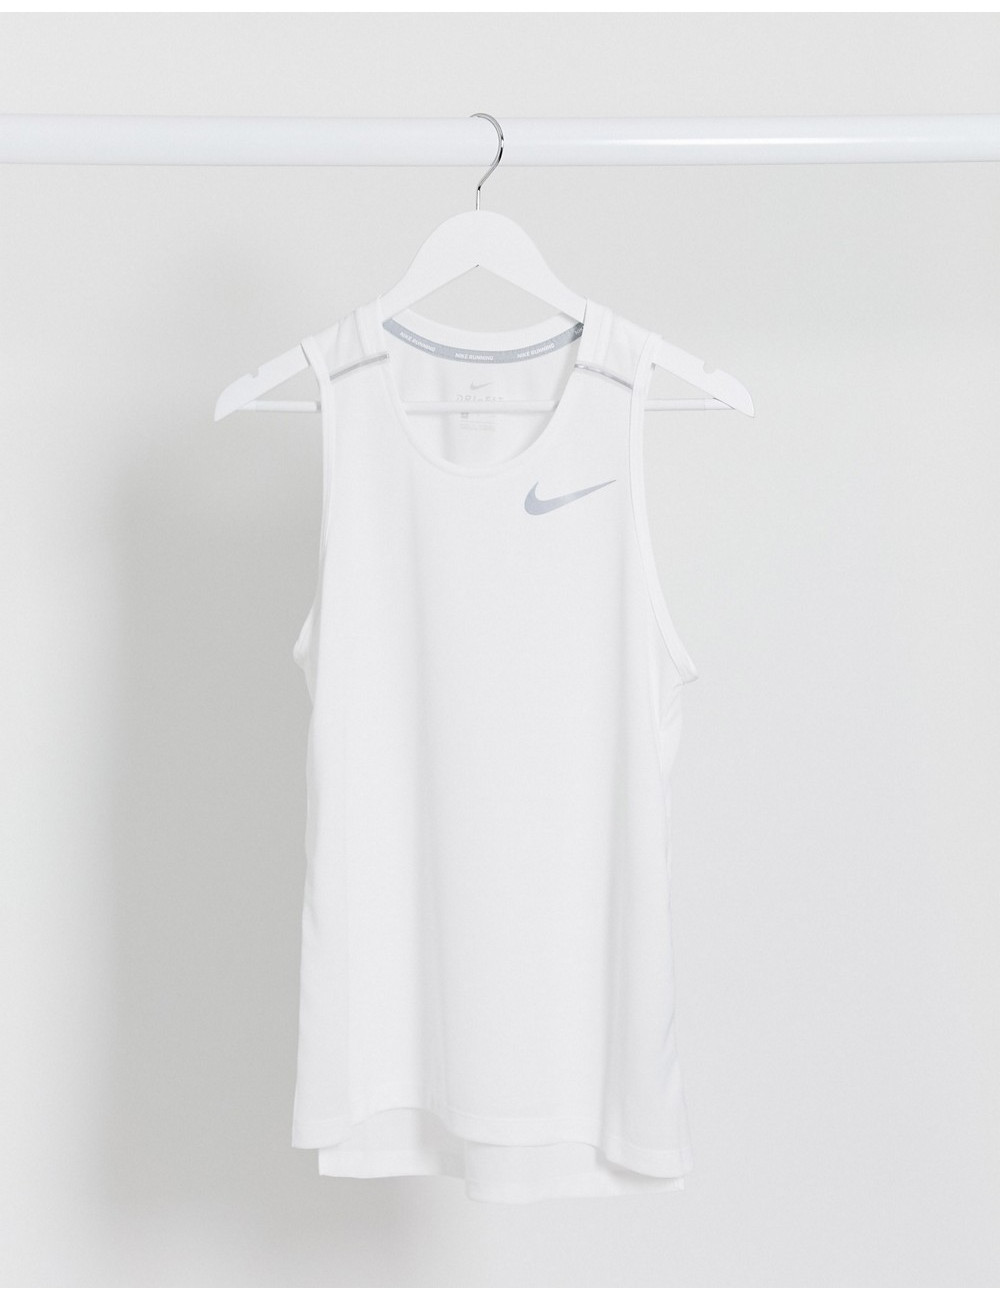 Nike Running Miler vest in...